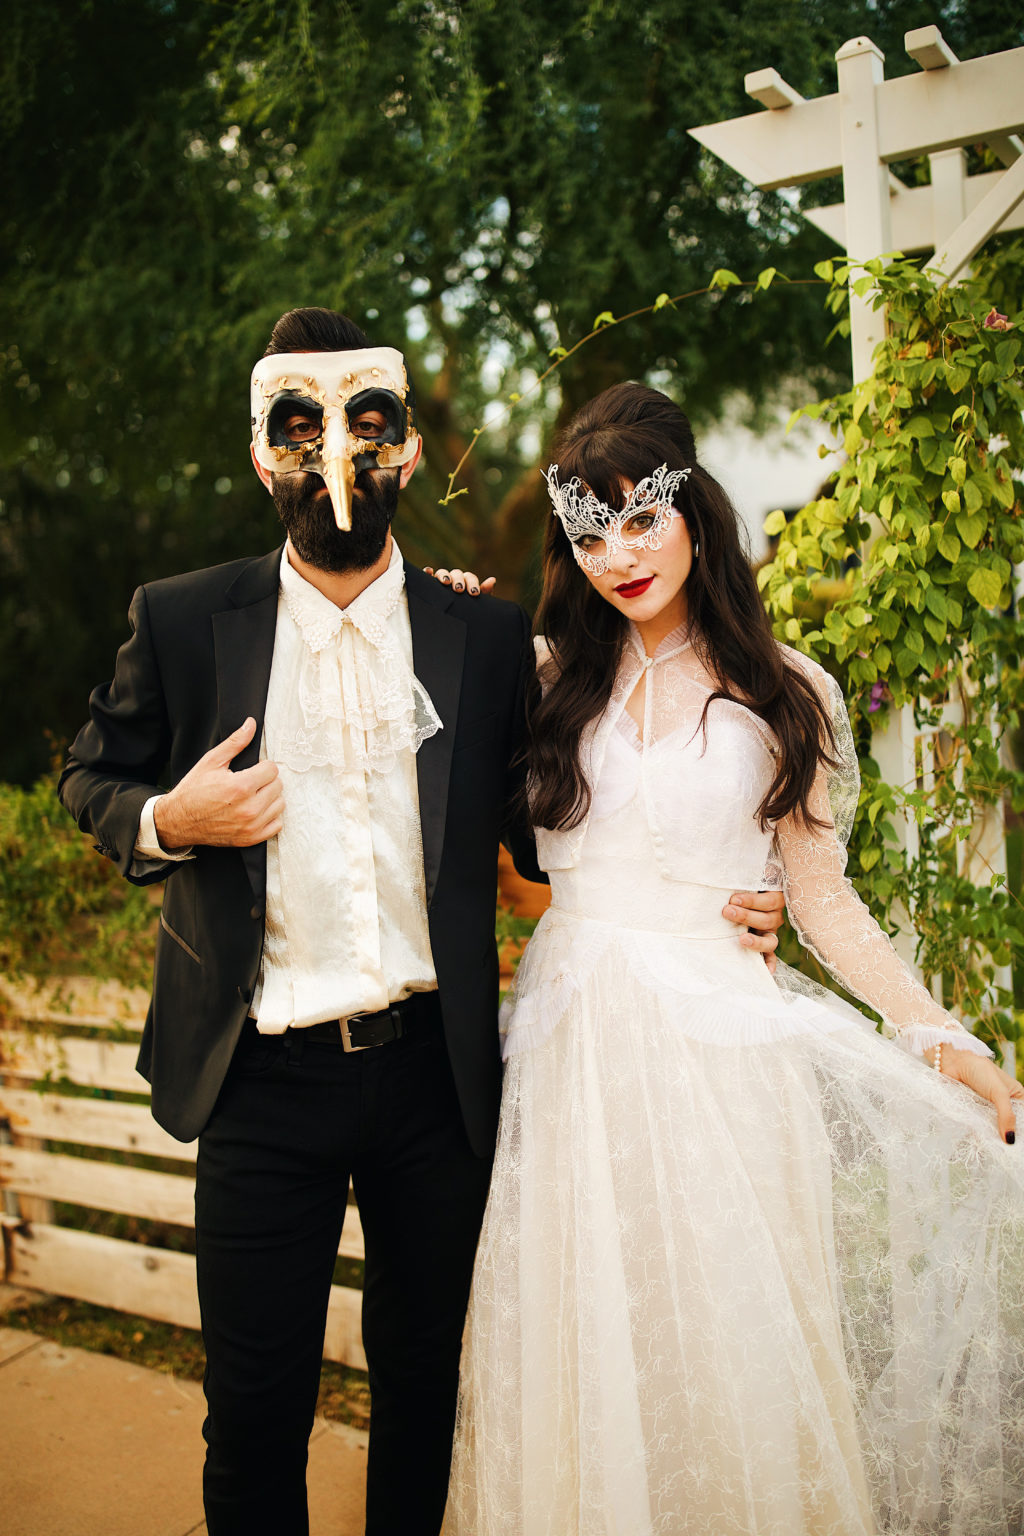 Couples Masquerade costume